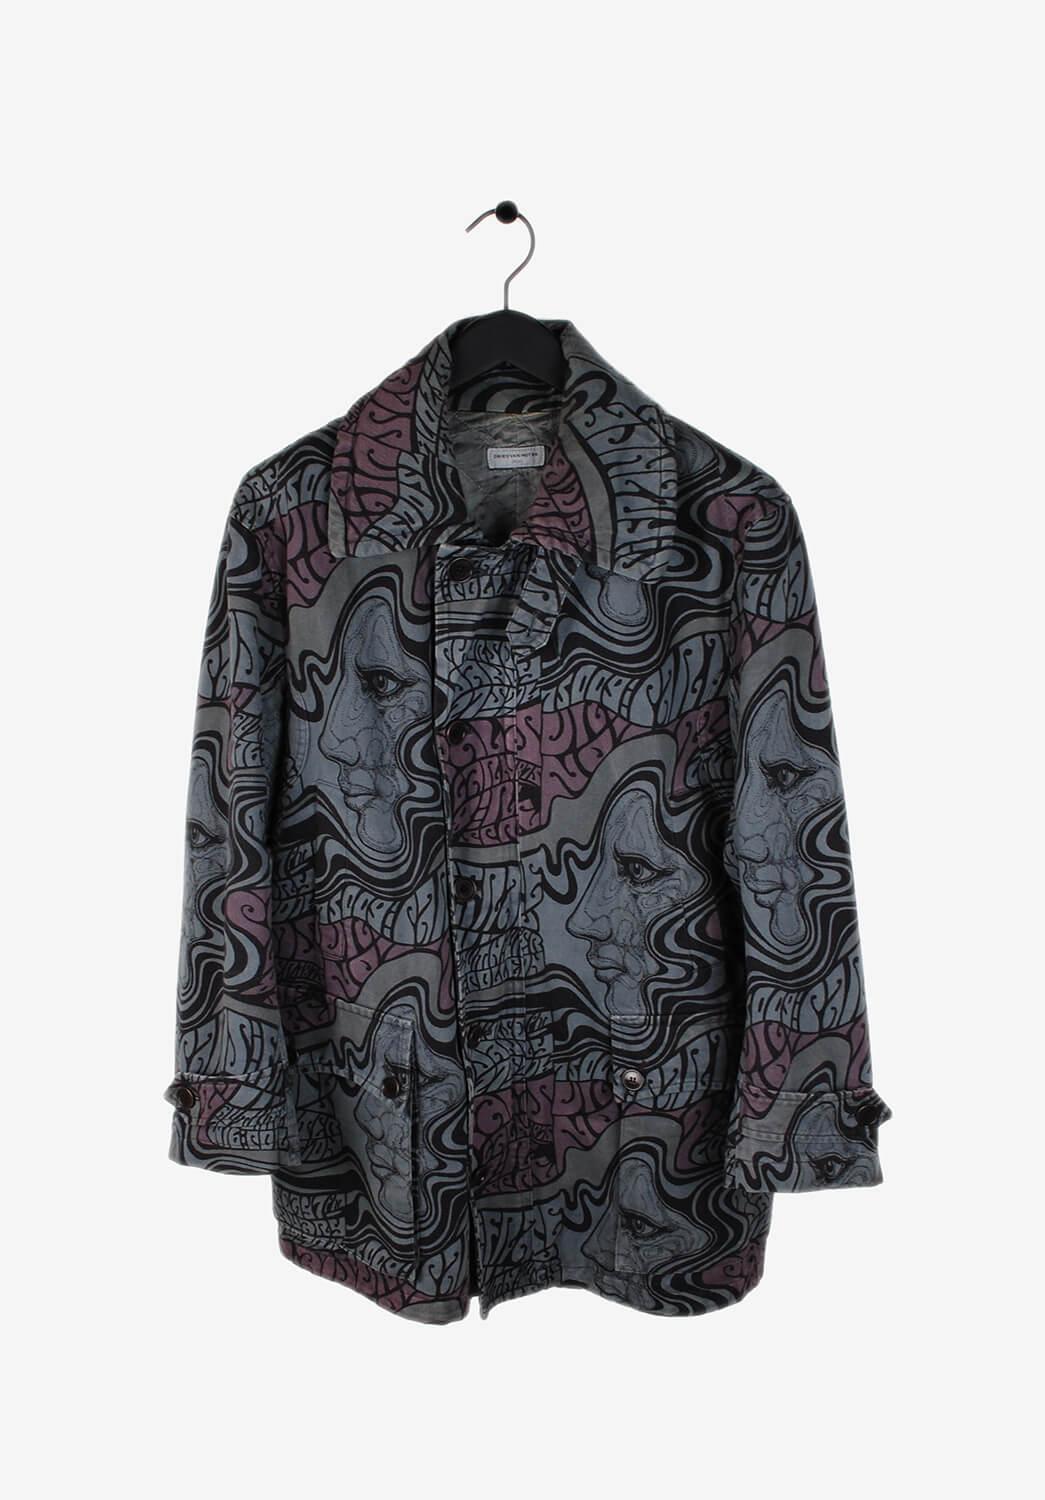 Black Dries Van Noten Men Jacket Coat Size L